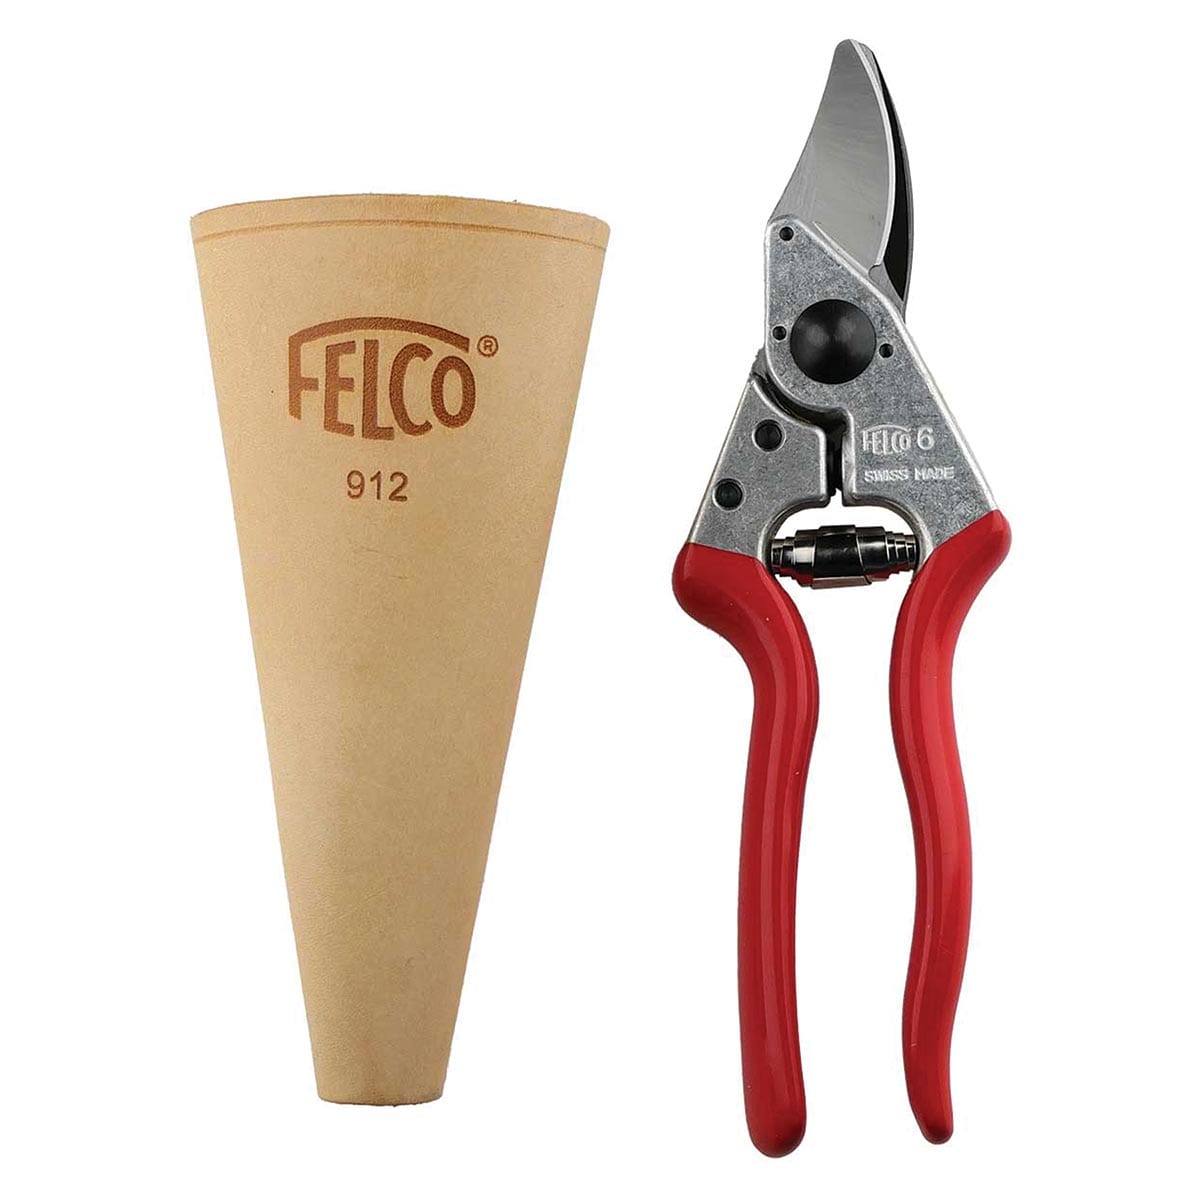 Felco Special Pack - FELCO2 Secateur + FELCO 600 Folding Saw